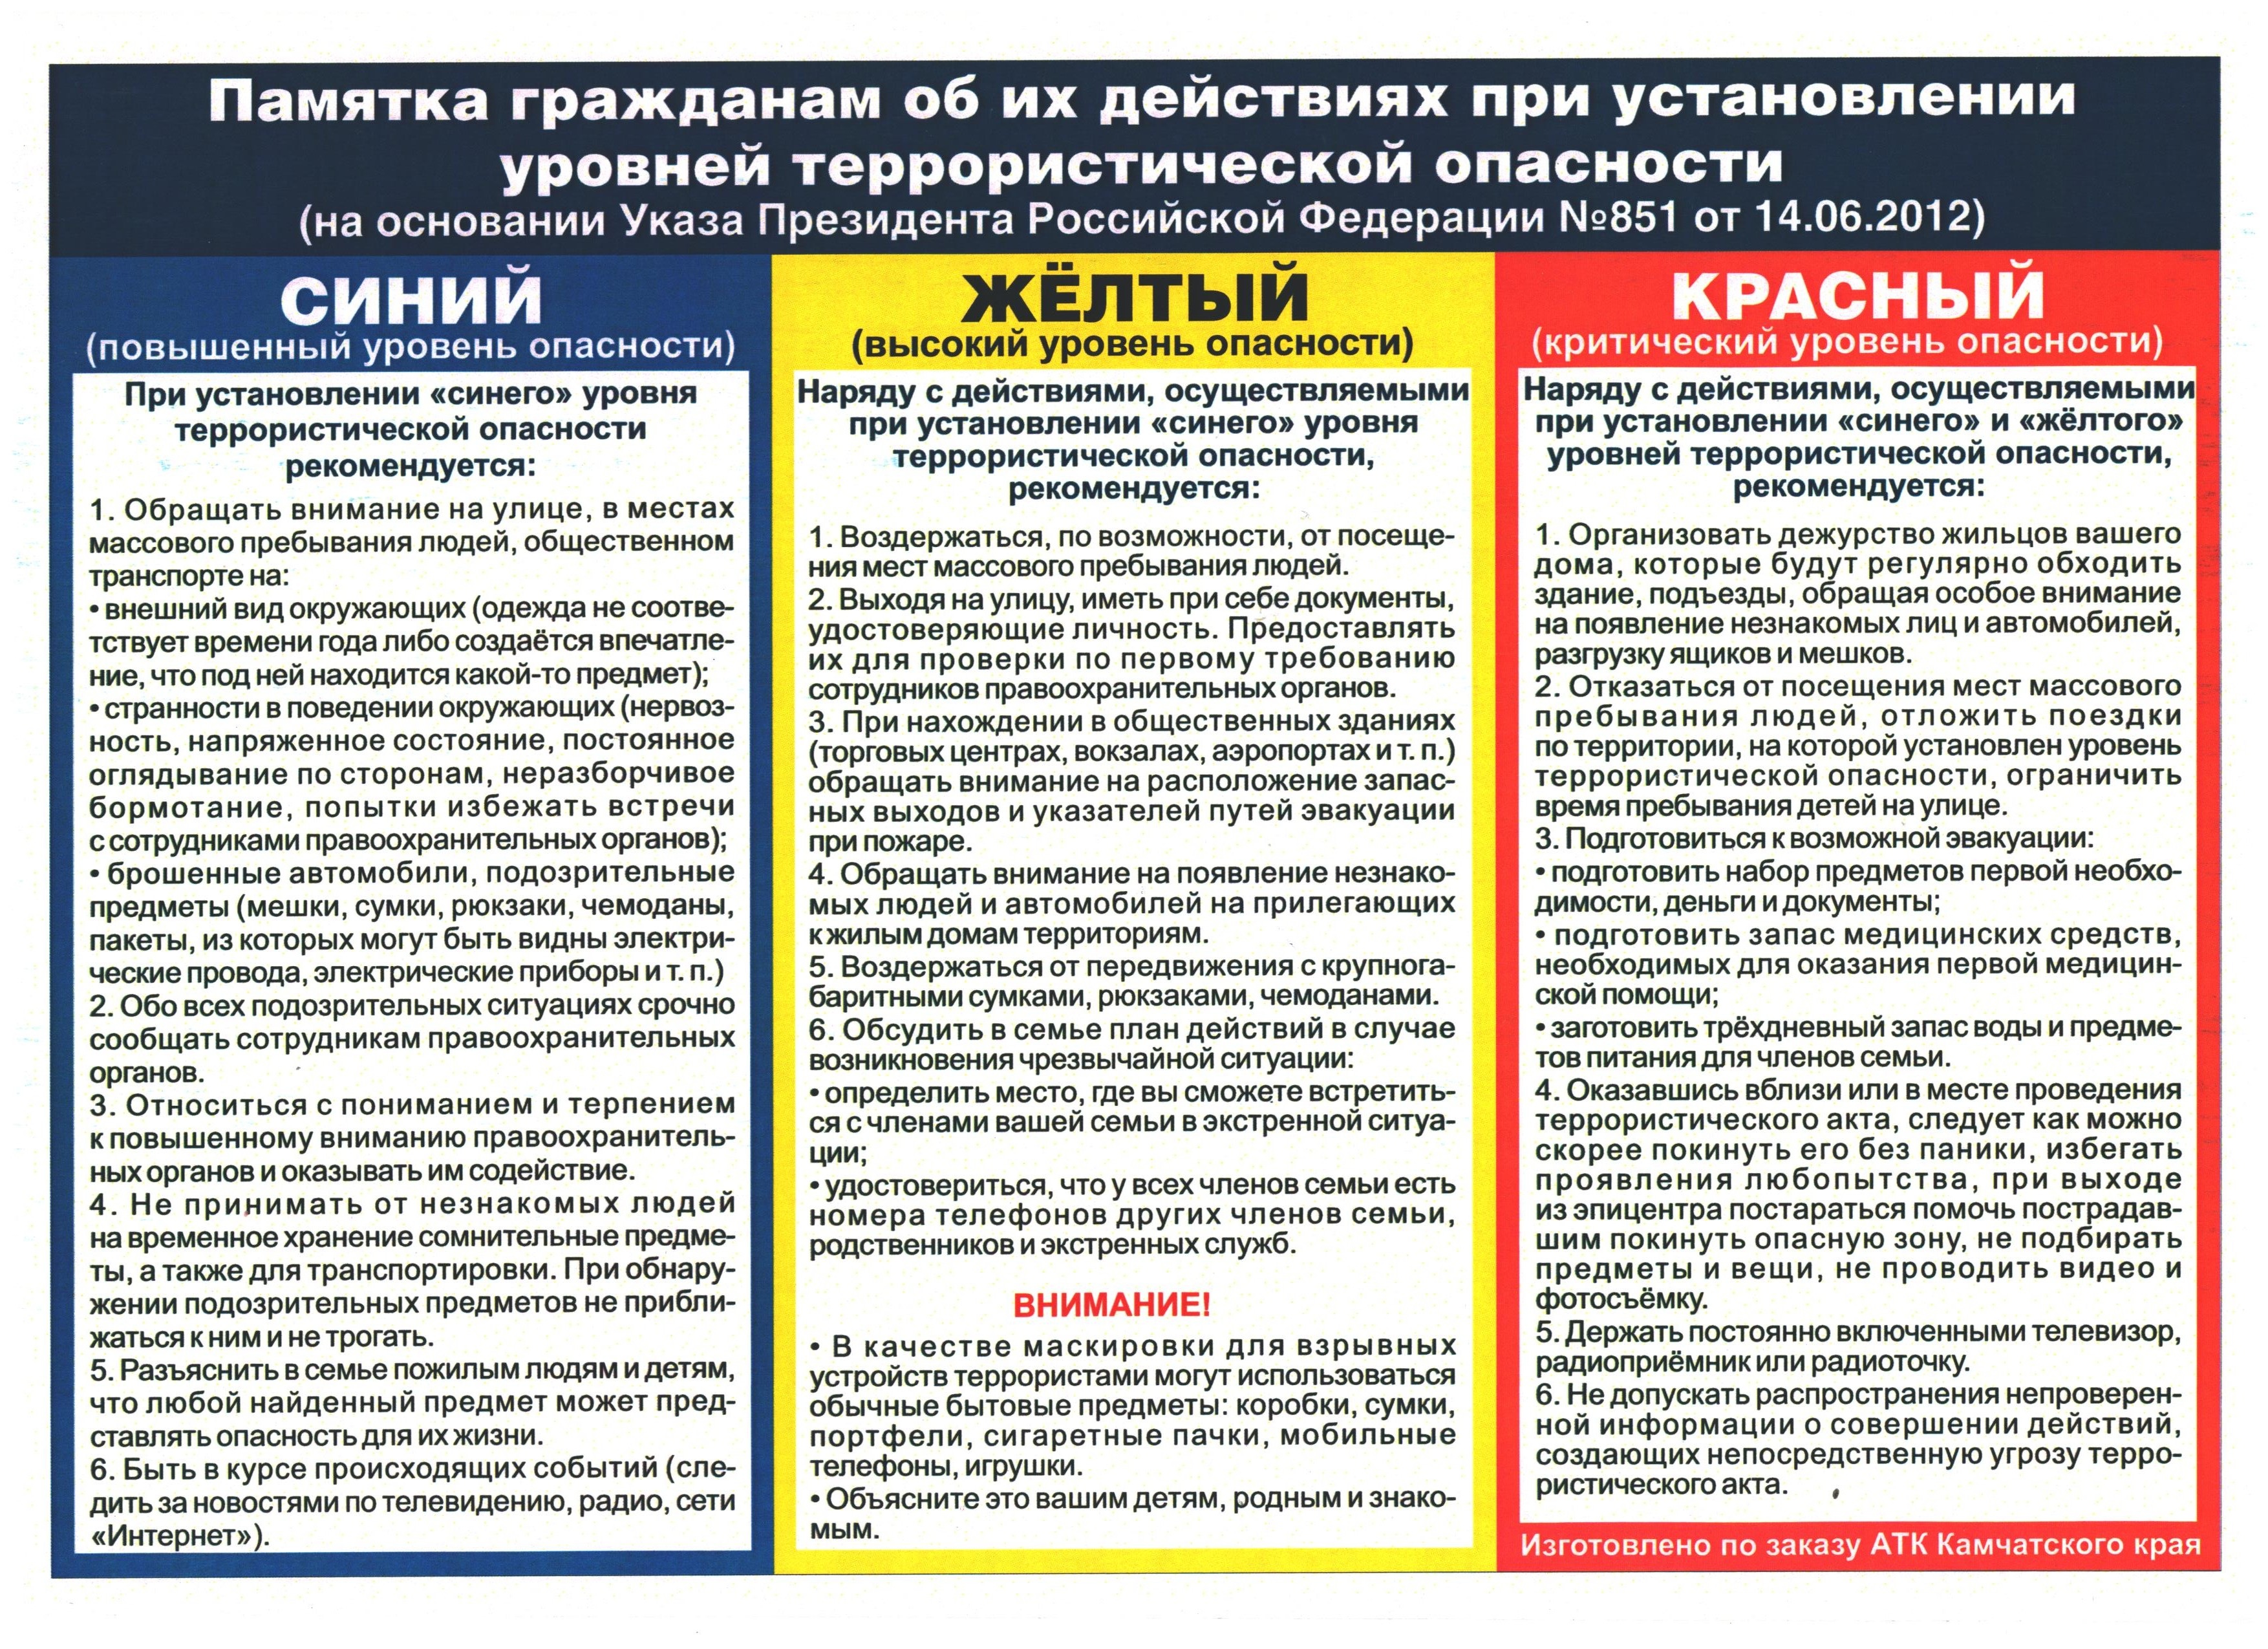 &laquo;Жёлтый&raquo; уровень террористической опасности в Белгородской области стал бессрочным.